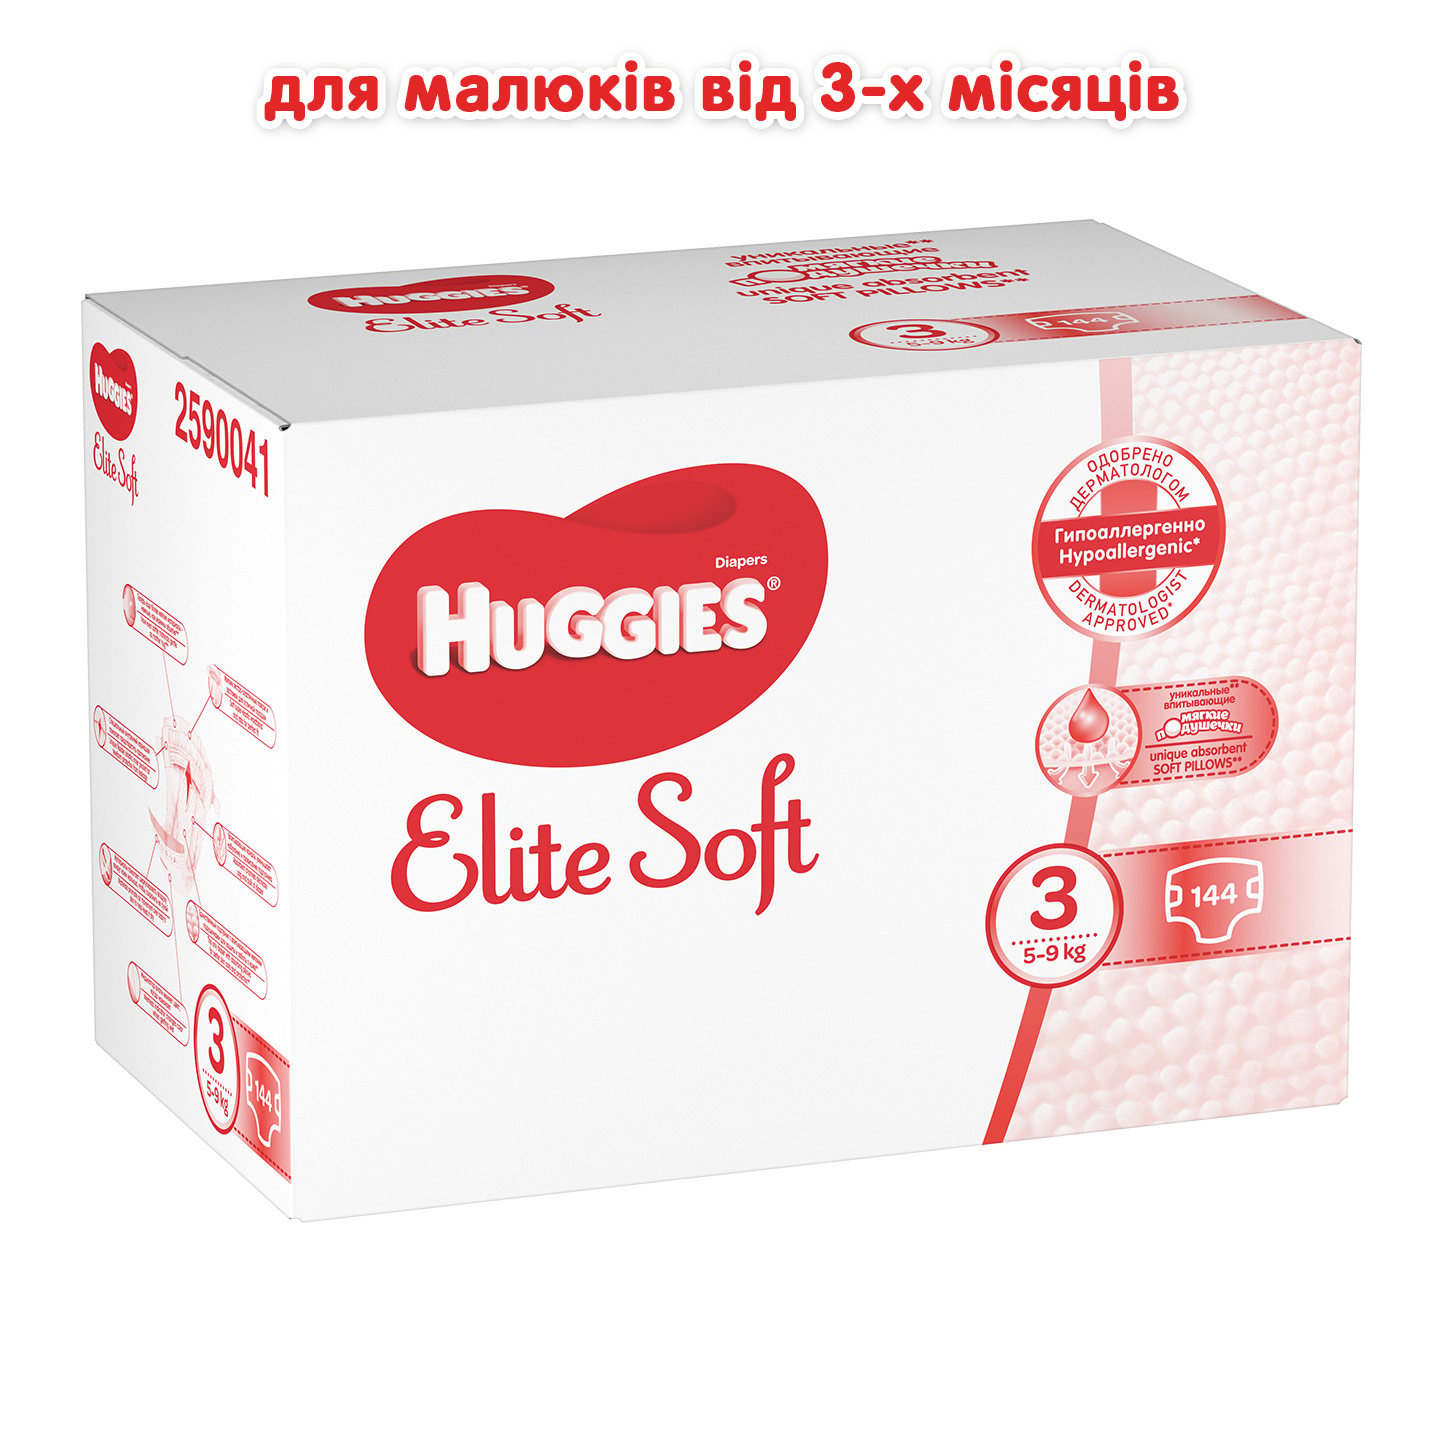 Уценка. Подгузники Huggies Elite Soft 3 (5-9 кг), 144 шт. - фото 2